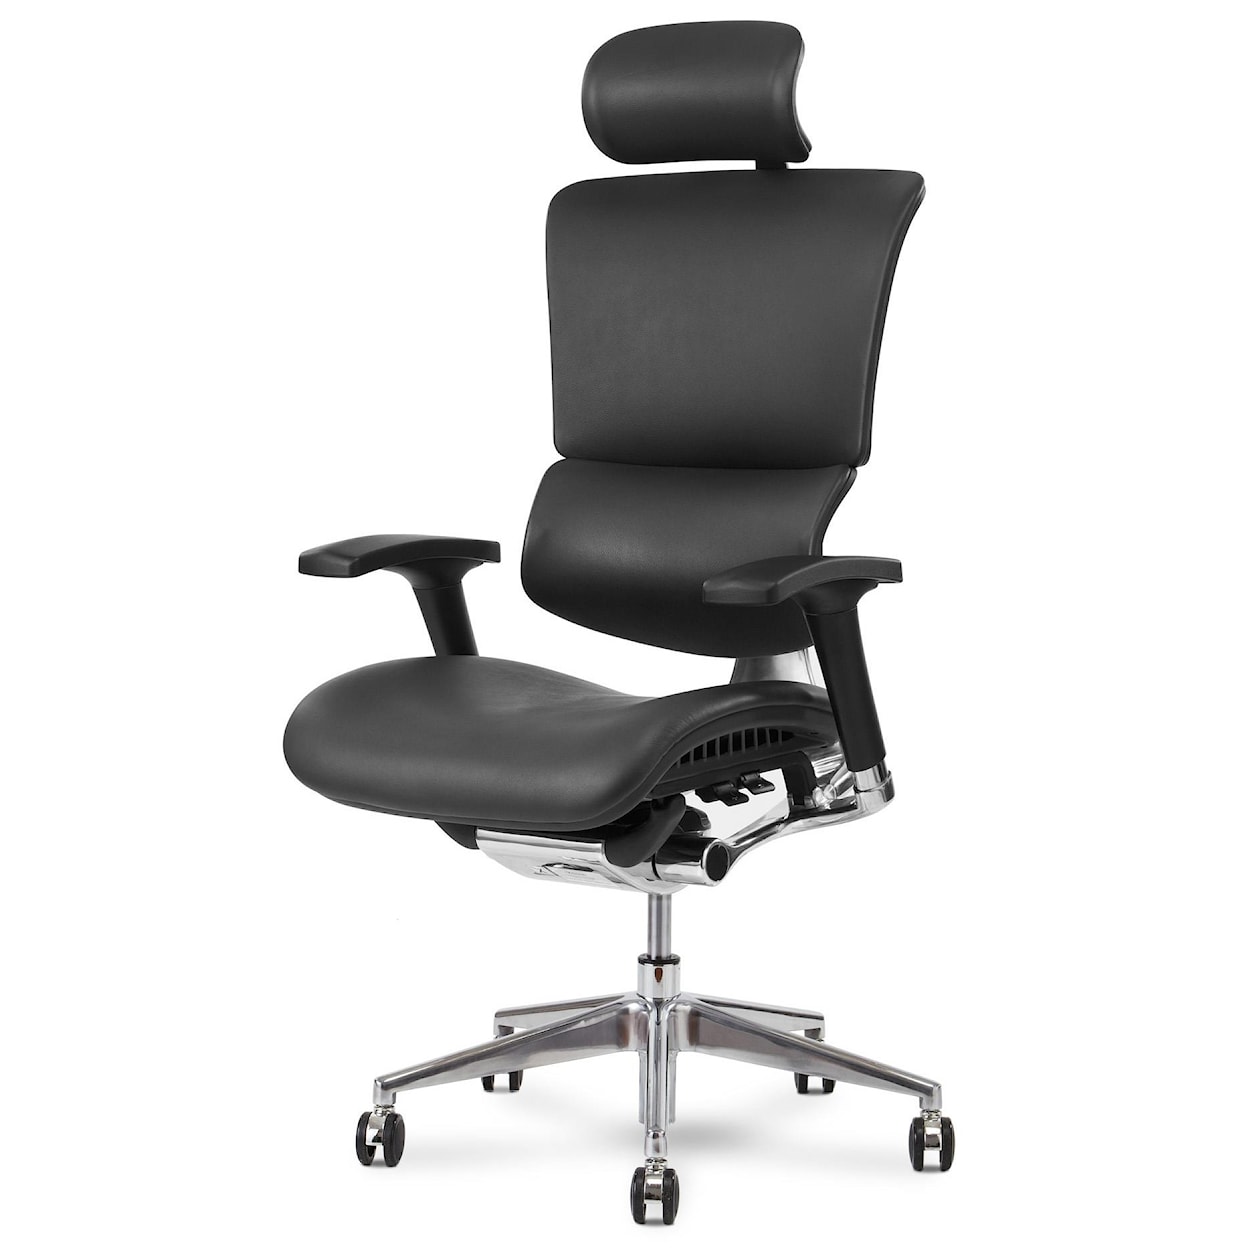 X-Chair X4 Executive Chair